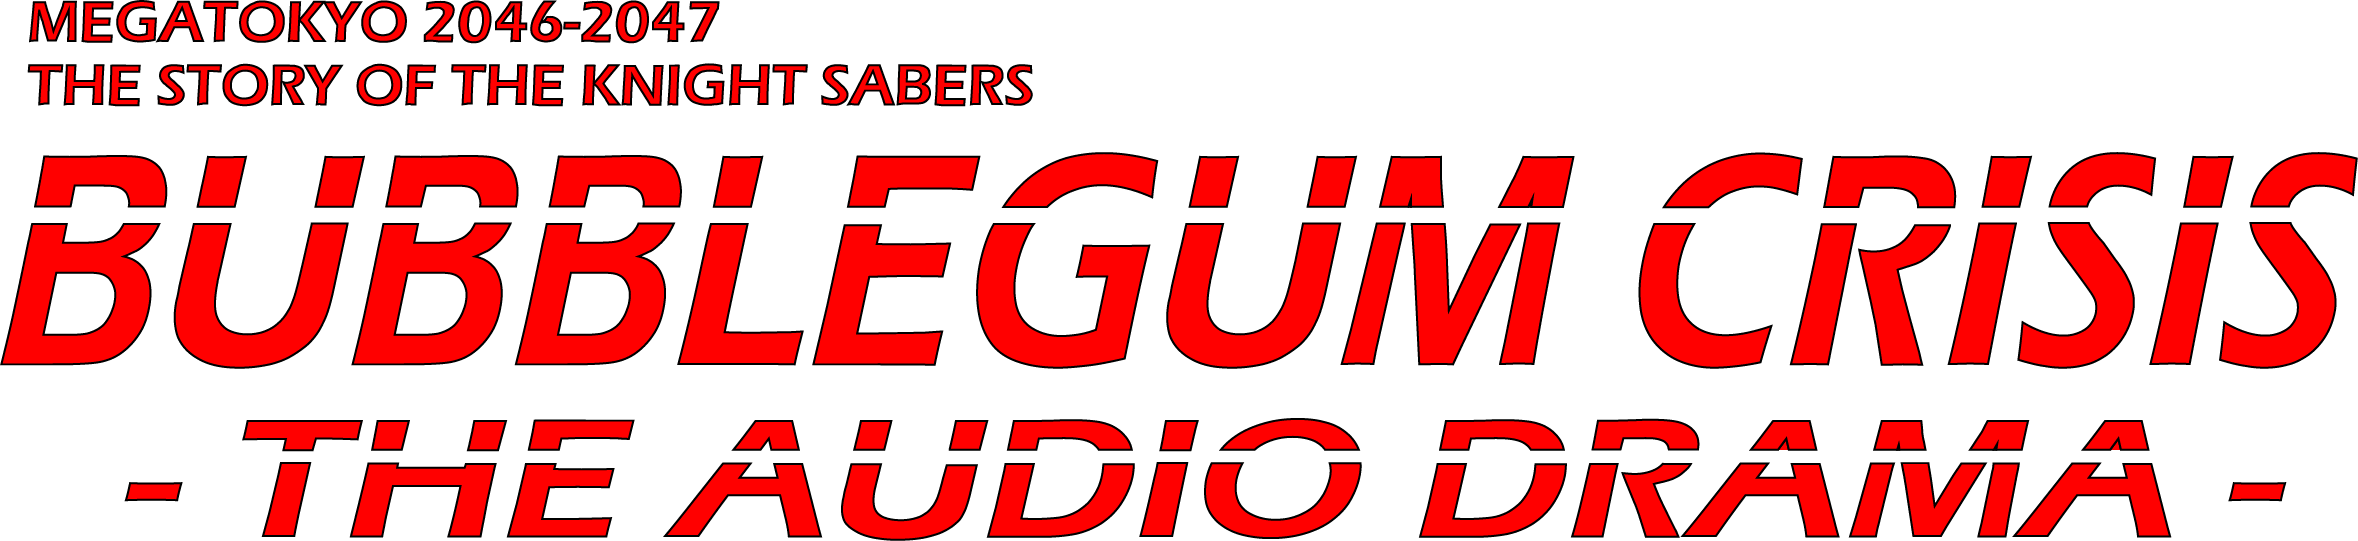 Bubblegum Crisis: The Audio Drama
    logo